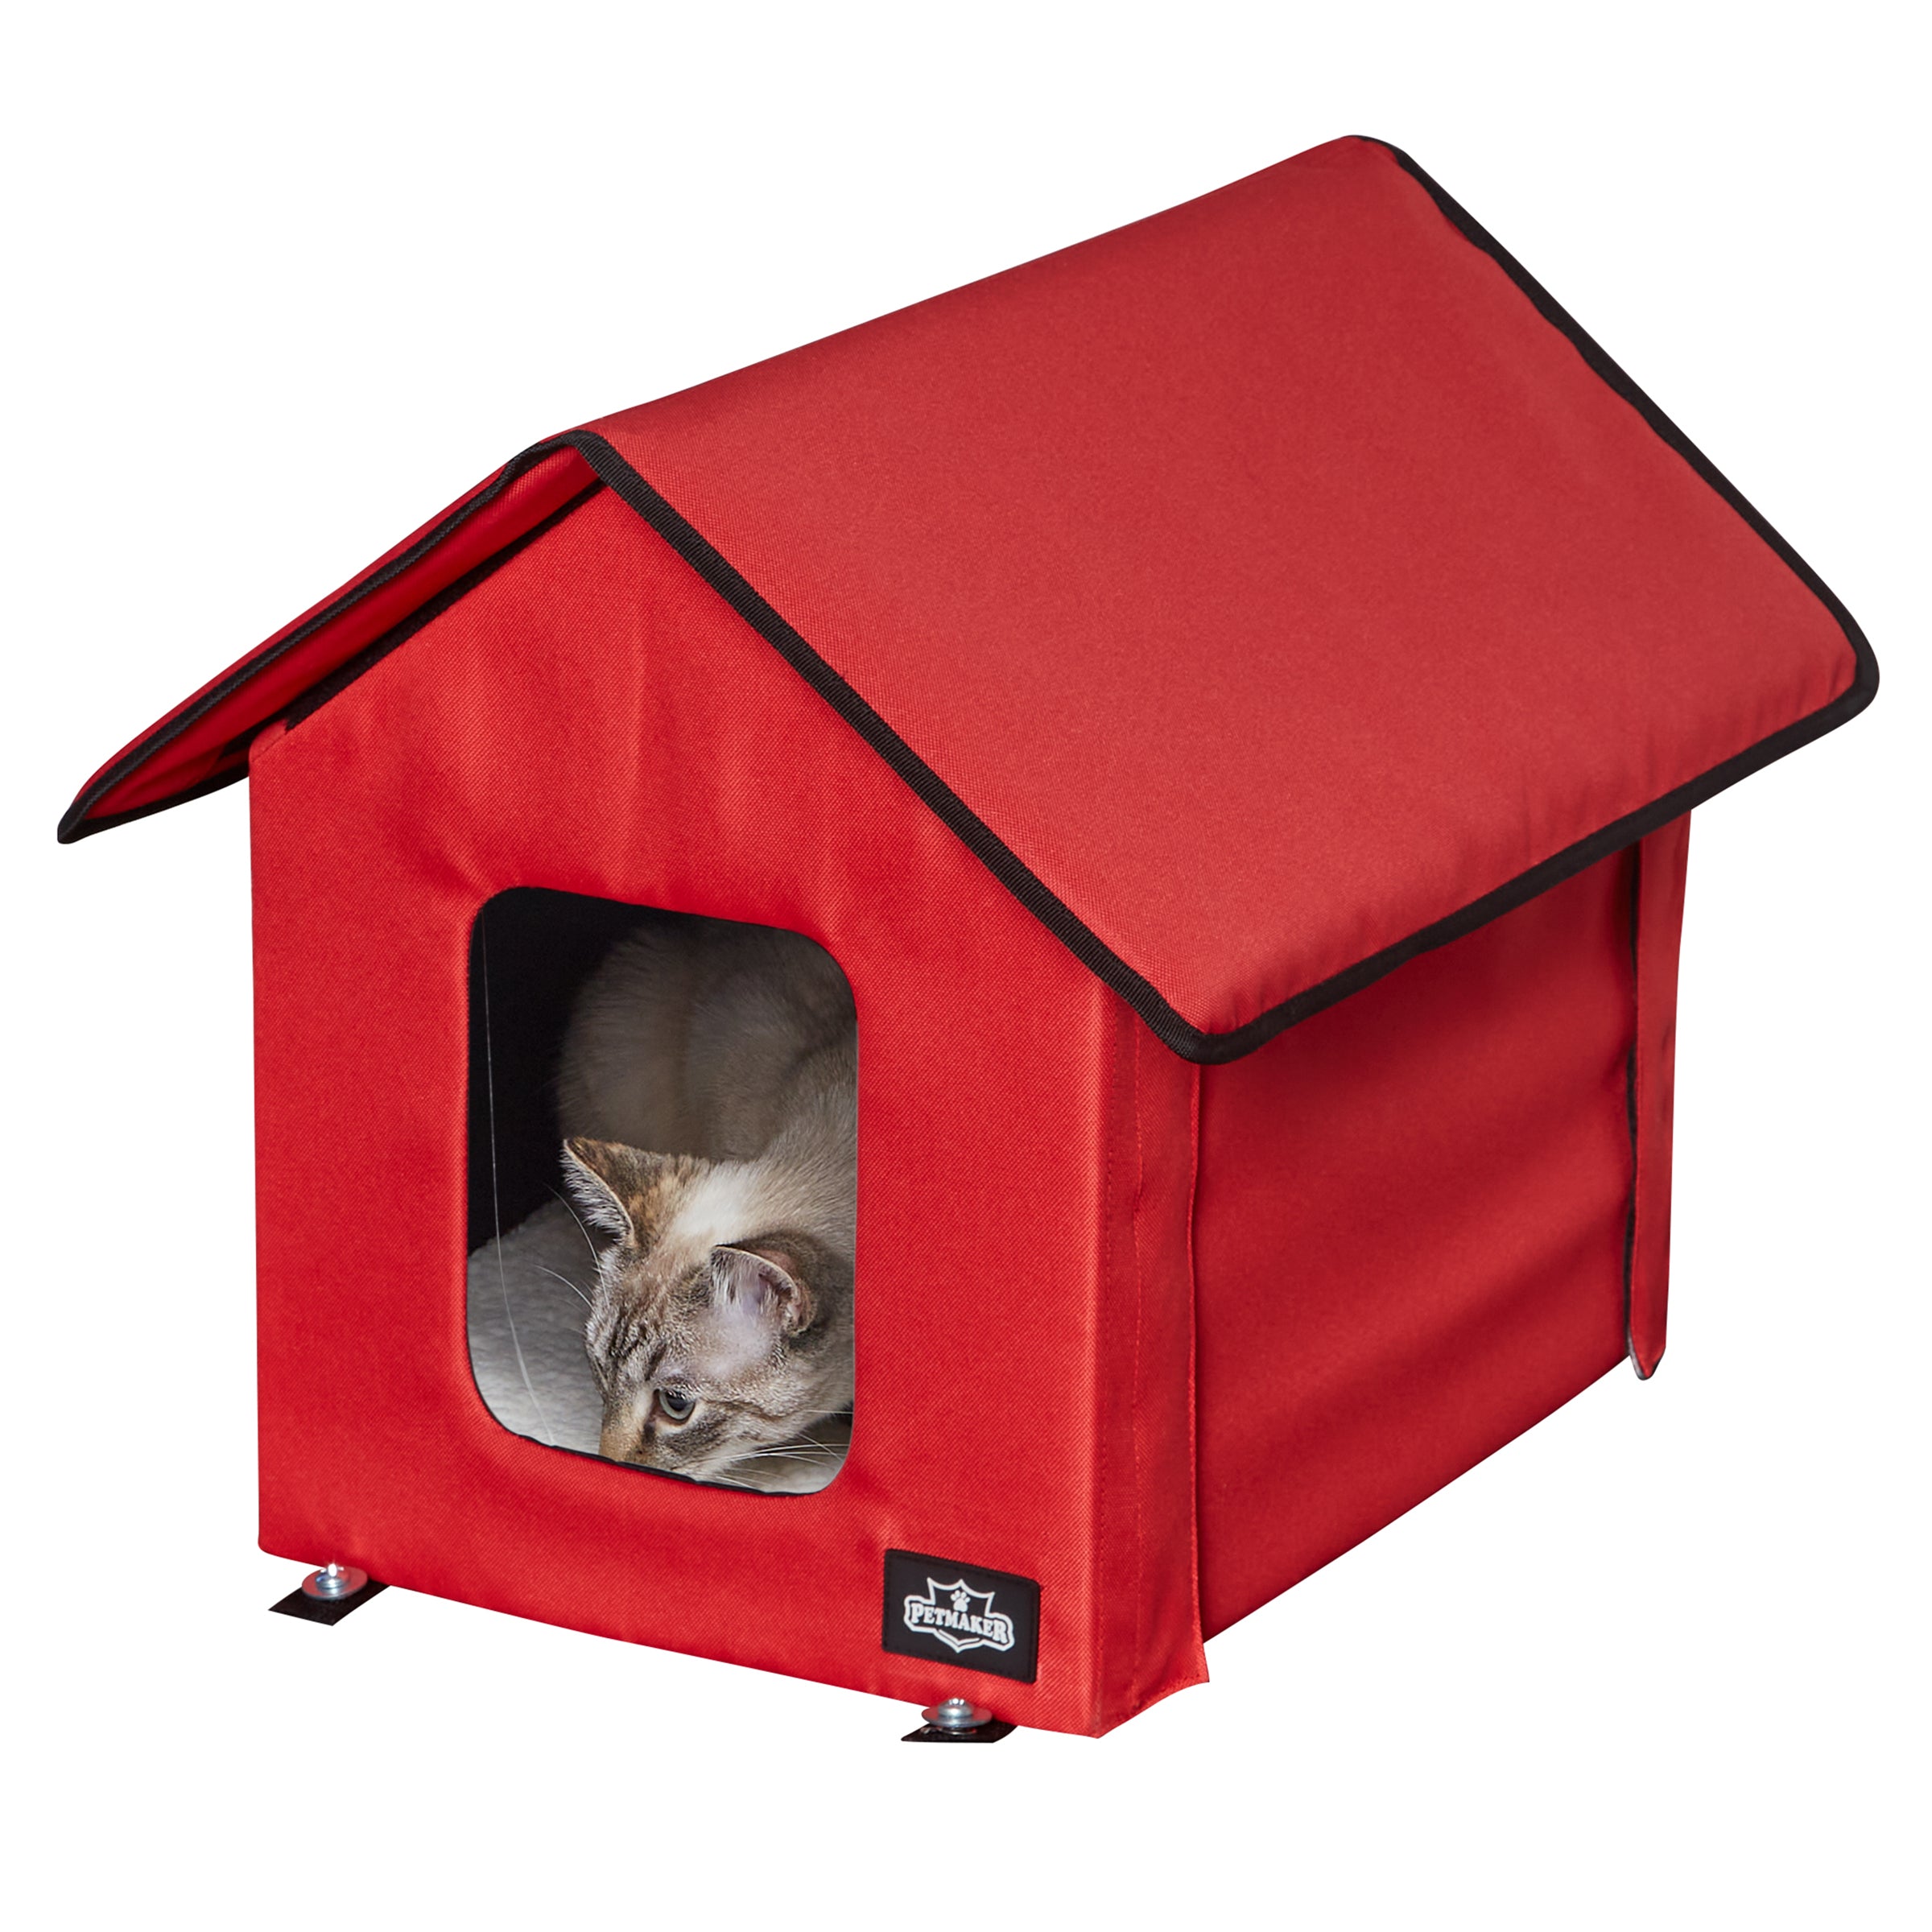 waterproof outdoor cat house